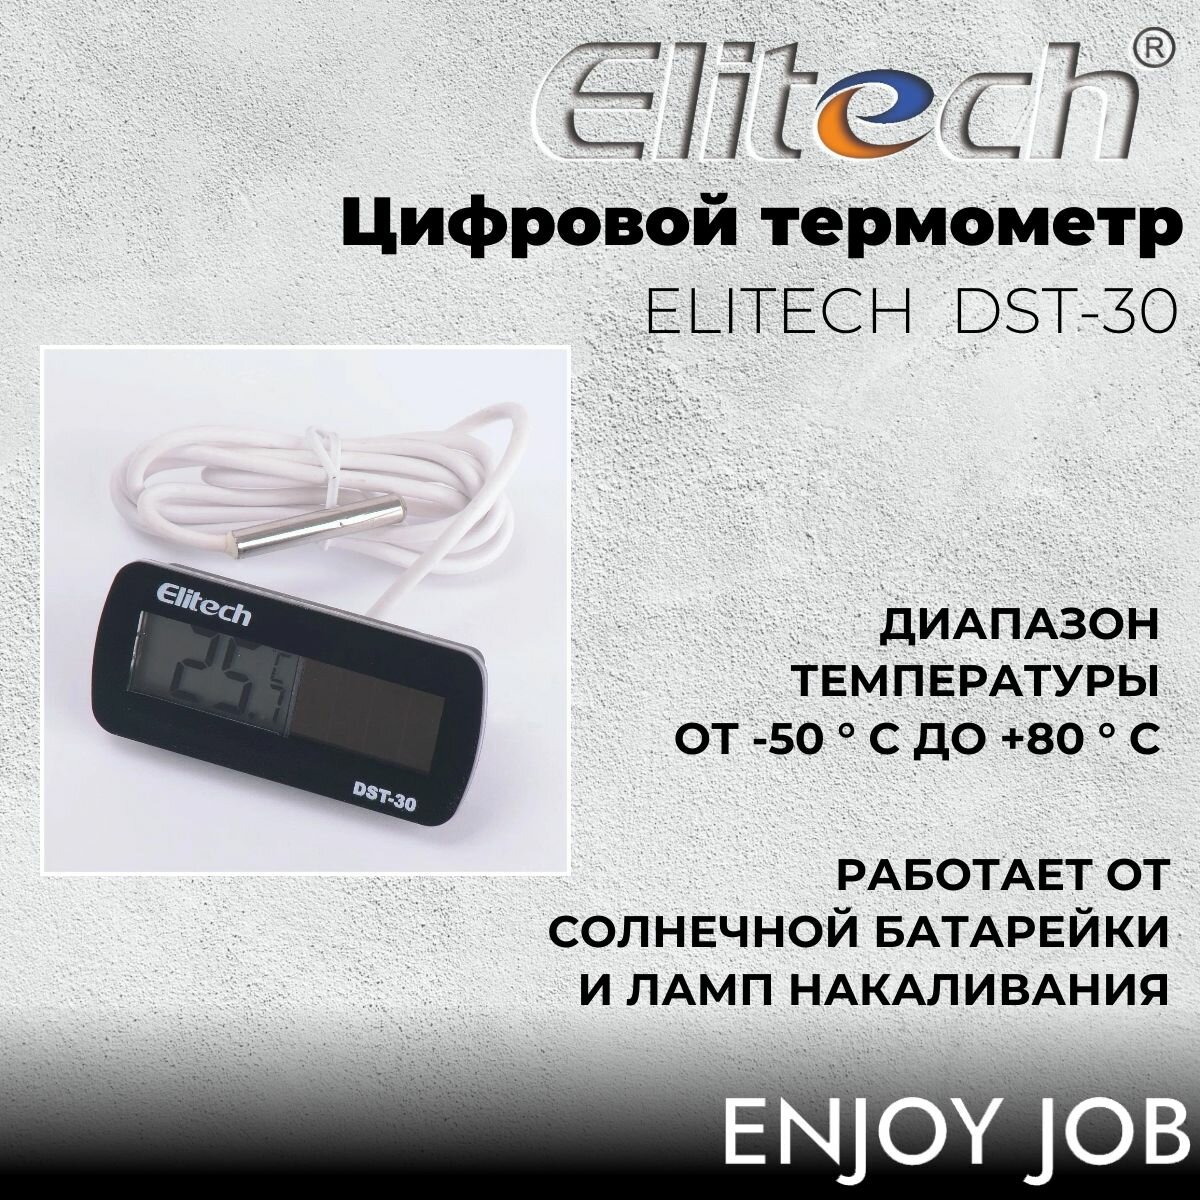 Цифровой термометр ELITECH DST-30 с солнечной батареей